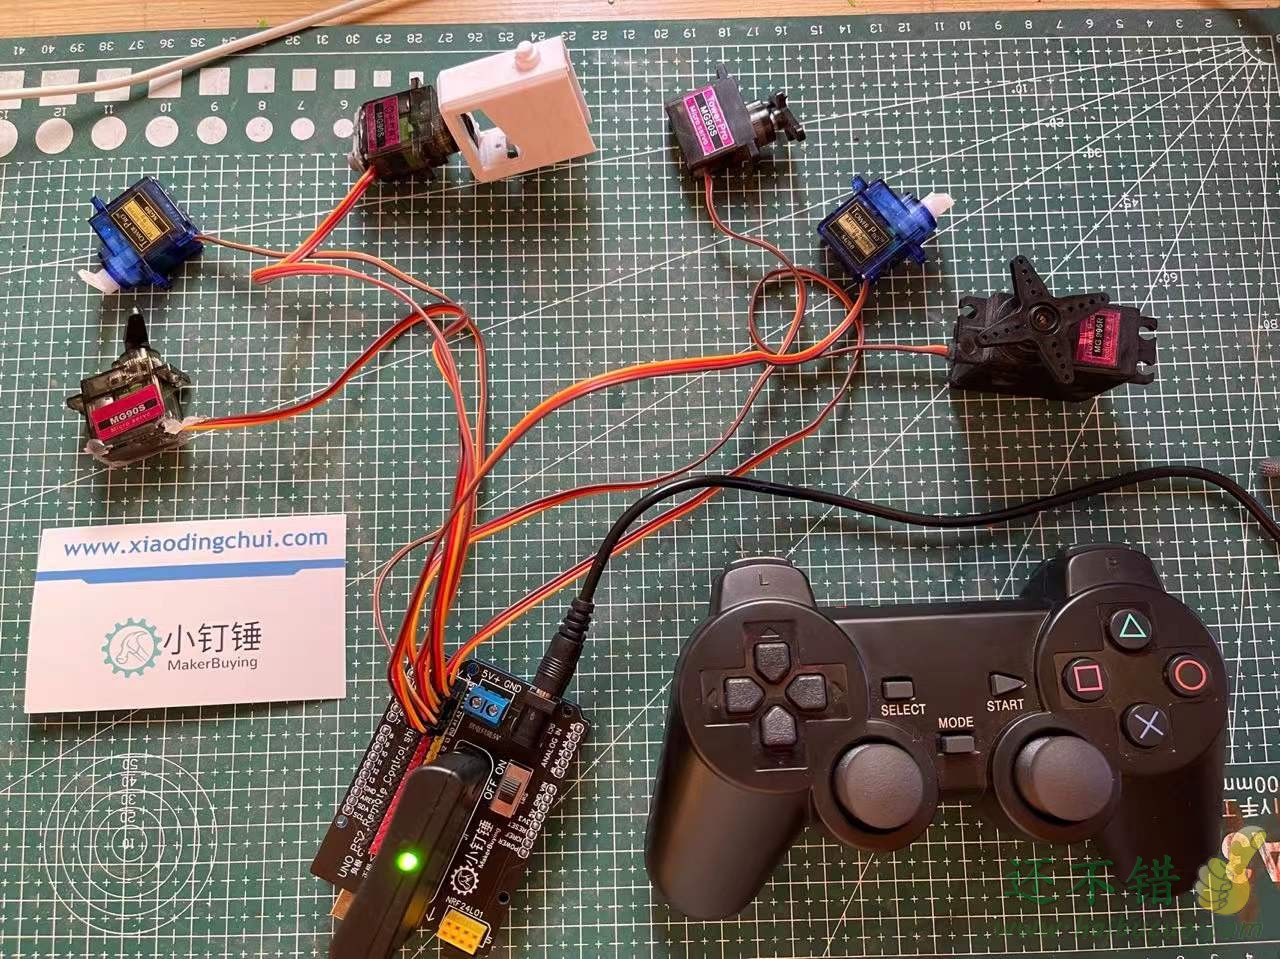 四六自由度舵机PS2遥控控制套装 for arduino 机械臂控制开源 SNAR51